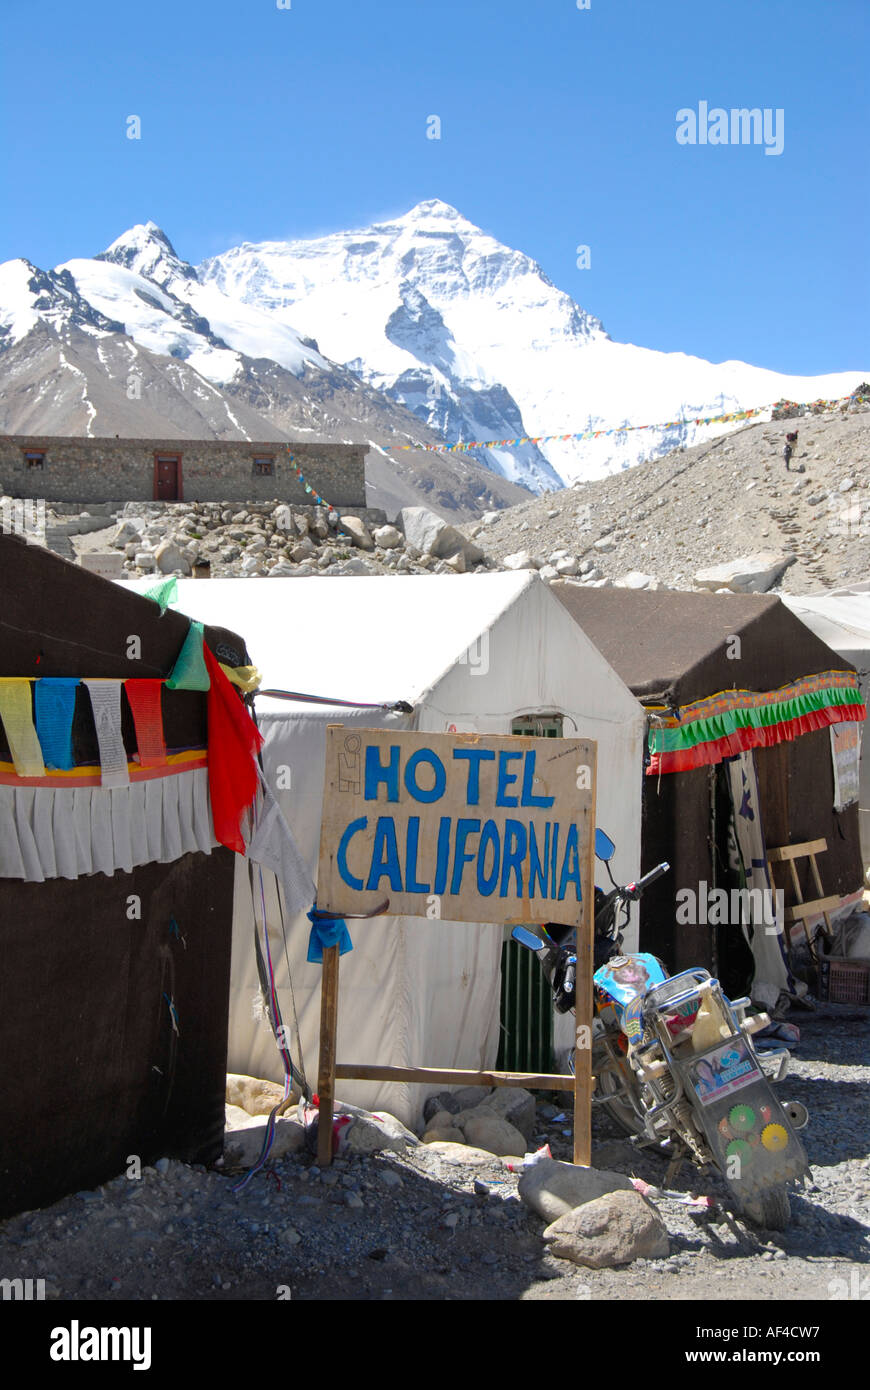 El Hotel California en una carpa con Everest Chomolungma el campamento base  del Everest Tibet China Fotografía de stock - Alamy